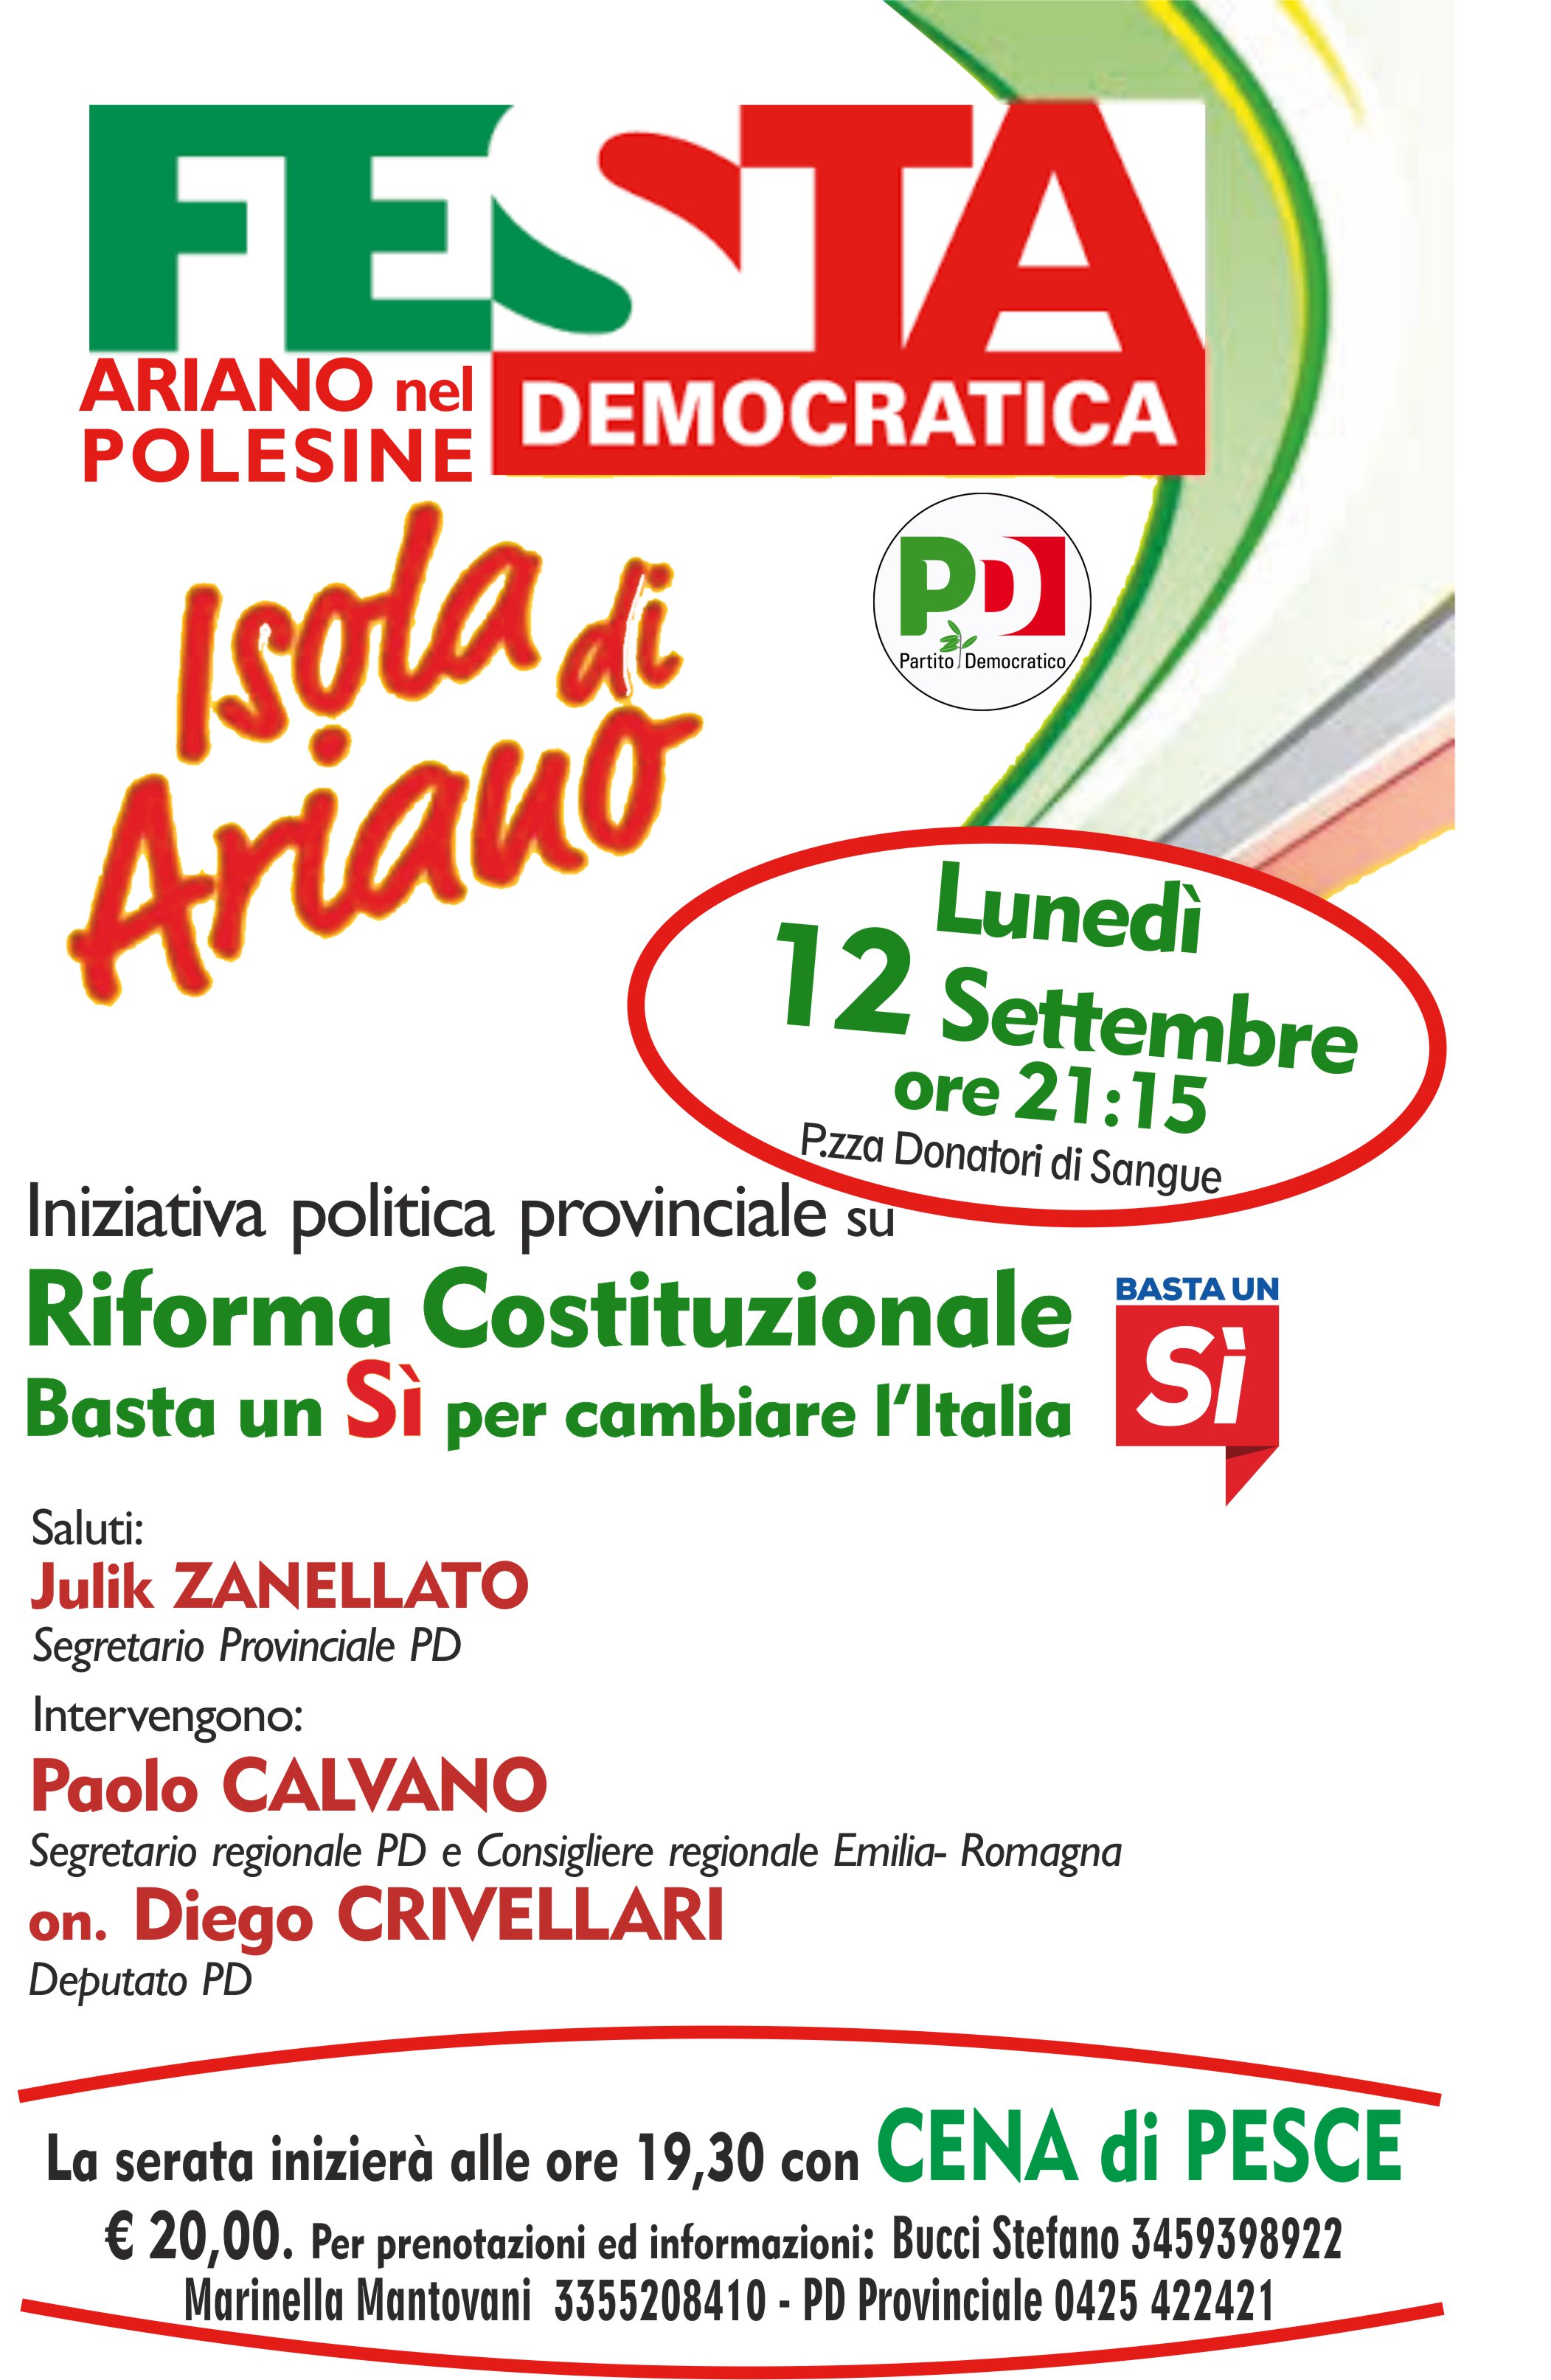 Al momento stai visualizzando Ariano nel Polesine Lunedì 12 settembre iniziativa politica